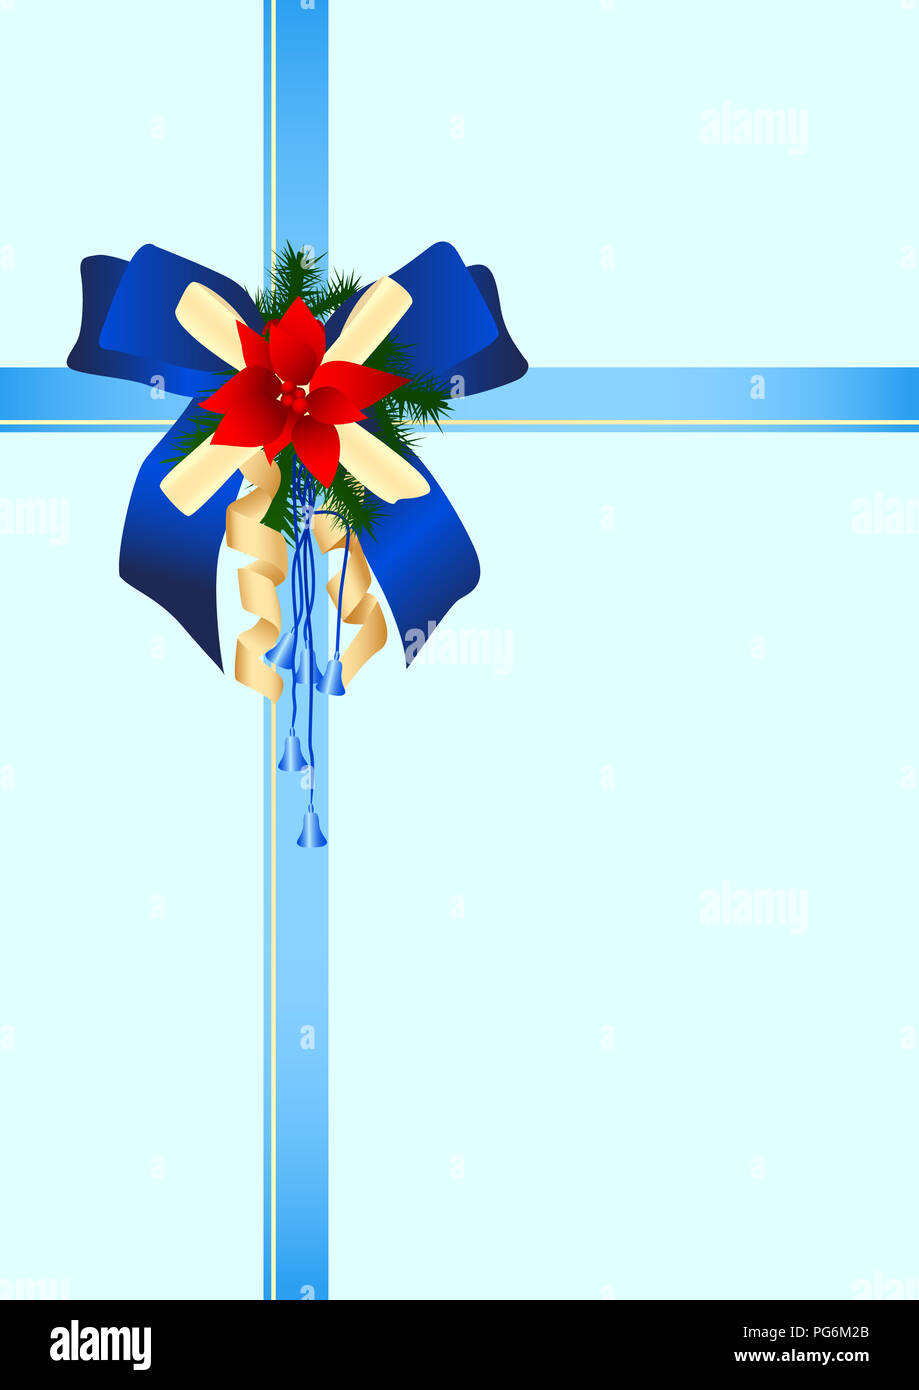 La imagen de un arco festivo y embalaje de regalo por navidad o celebraciones de tarjeta. Foto de stock